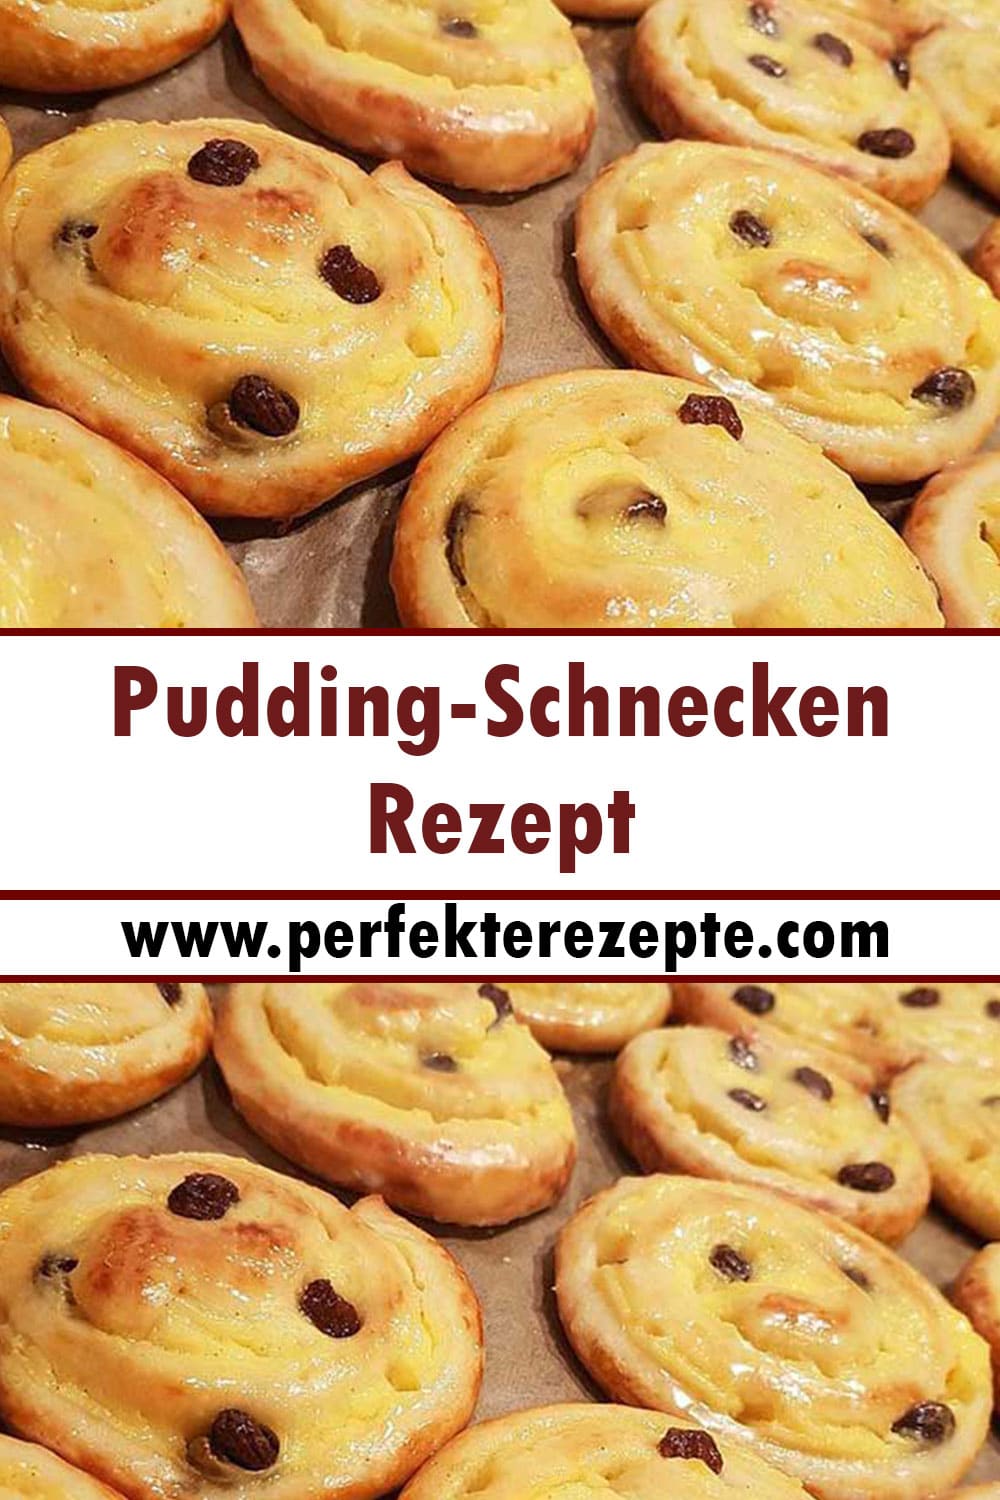 Pudding-Schnecken Rezept